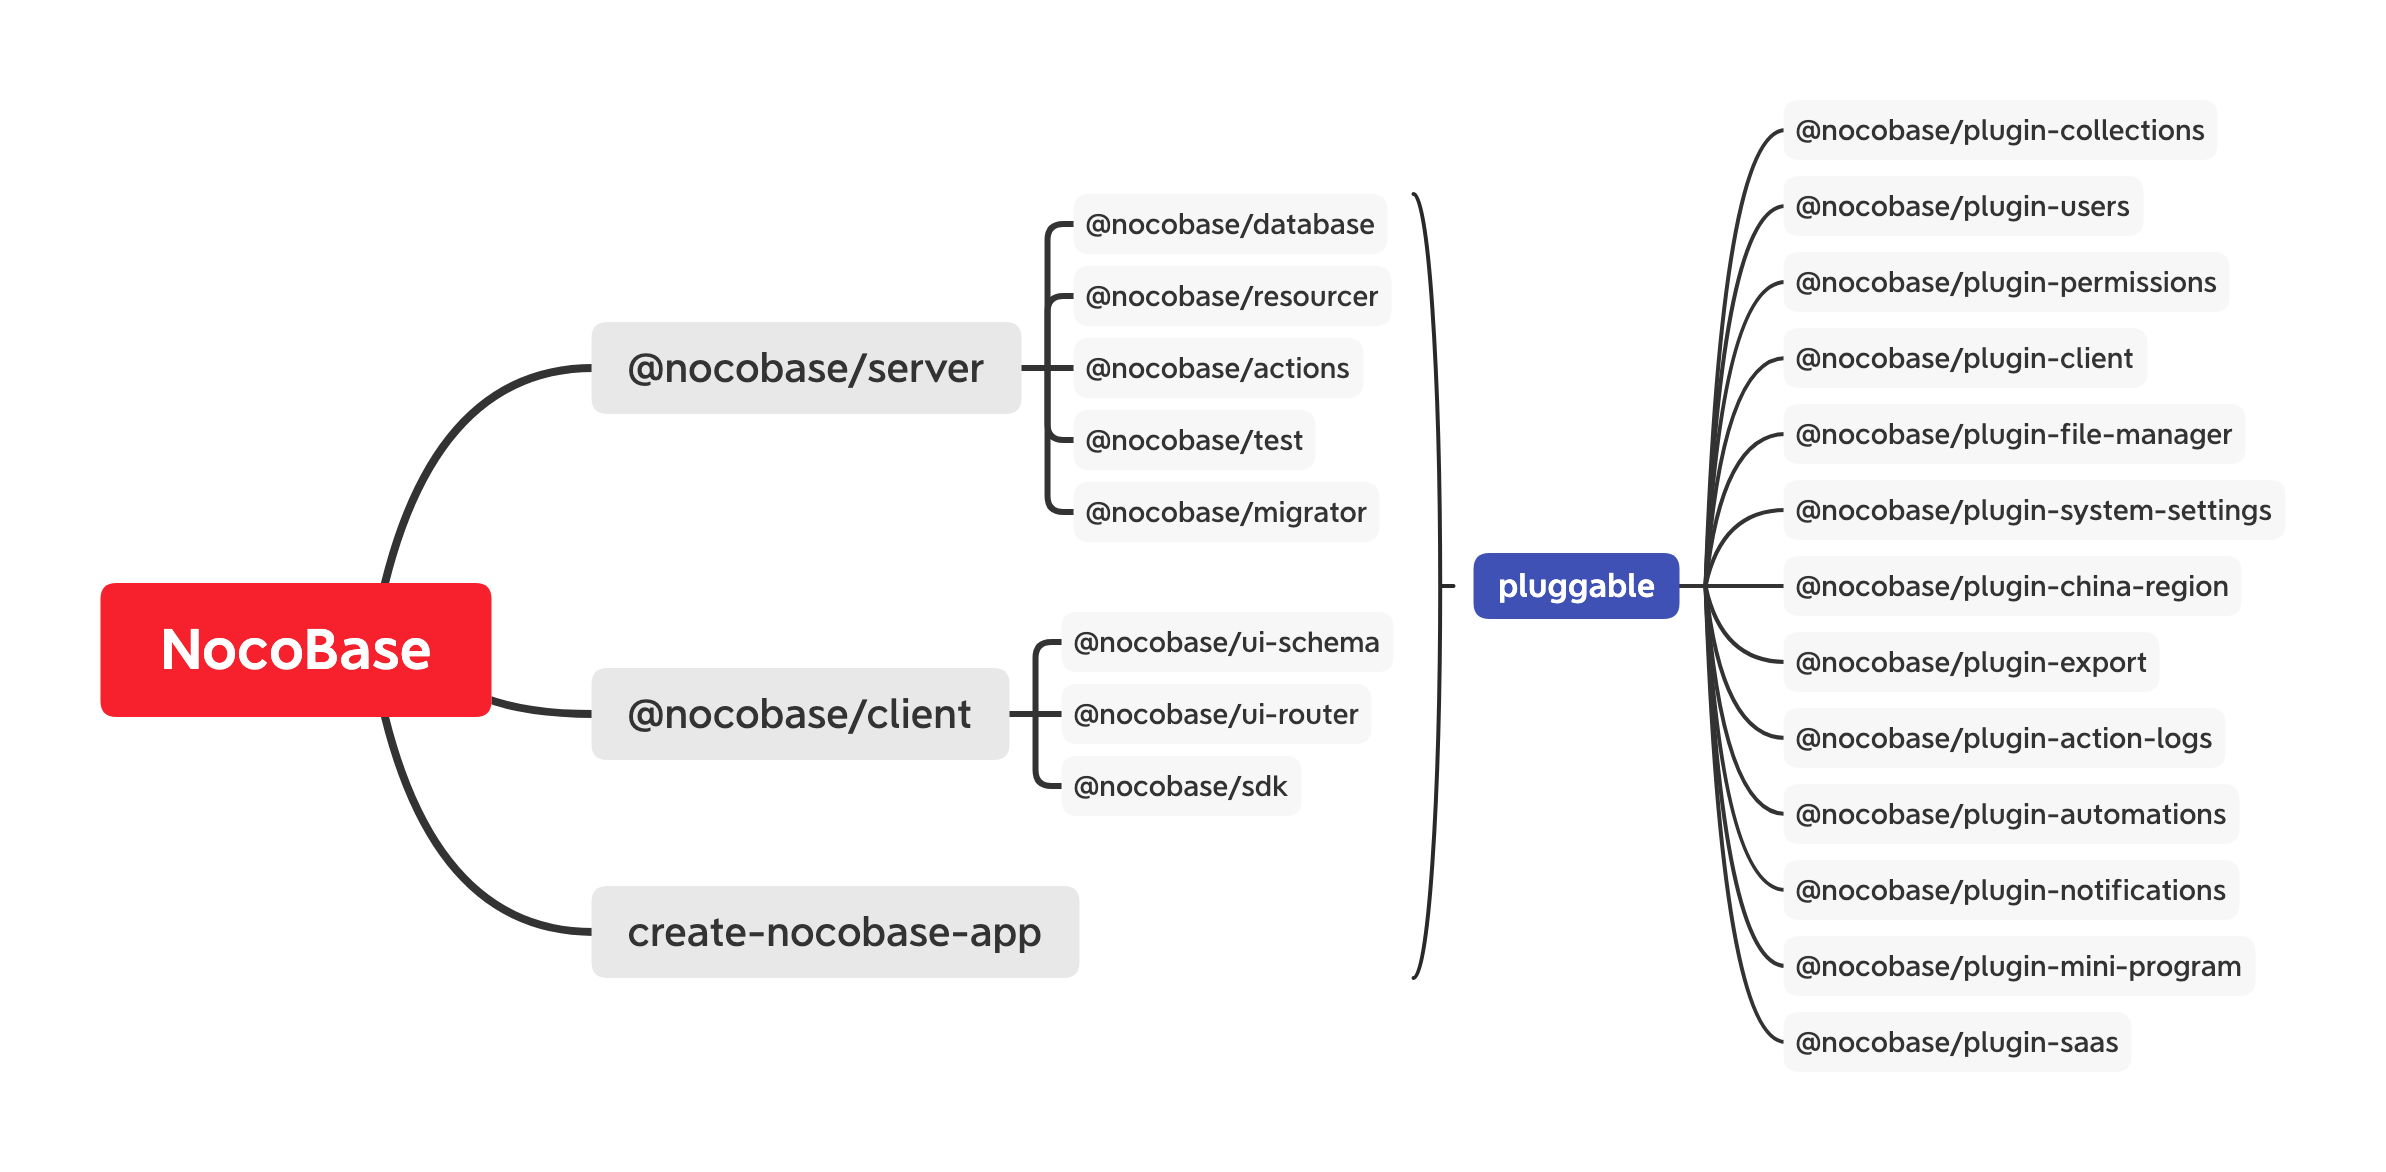 NocoBase 一个极易扩展的开源无代码和低代码开发平台